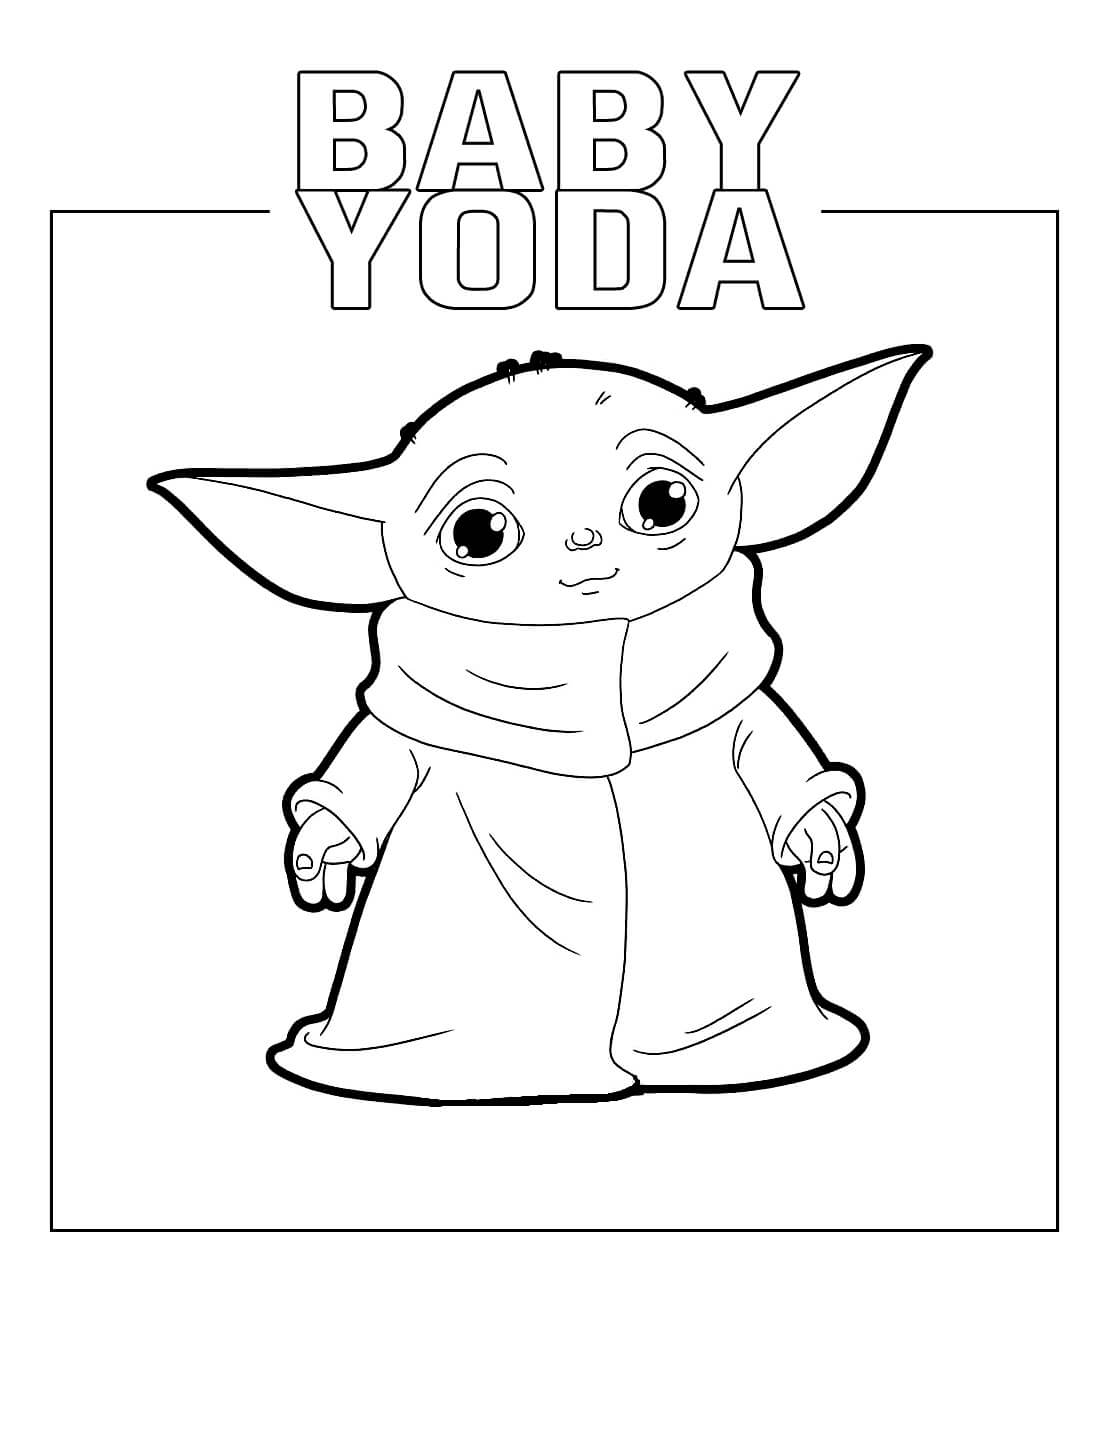 Bebé Yoda coloring pages